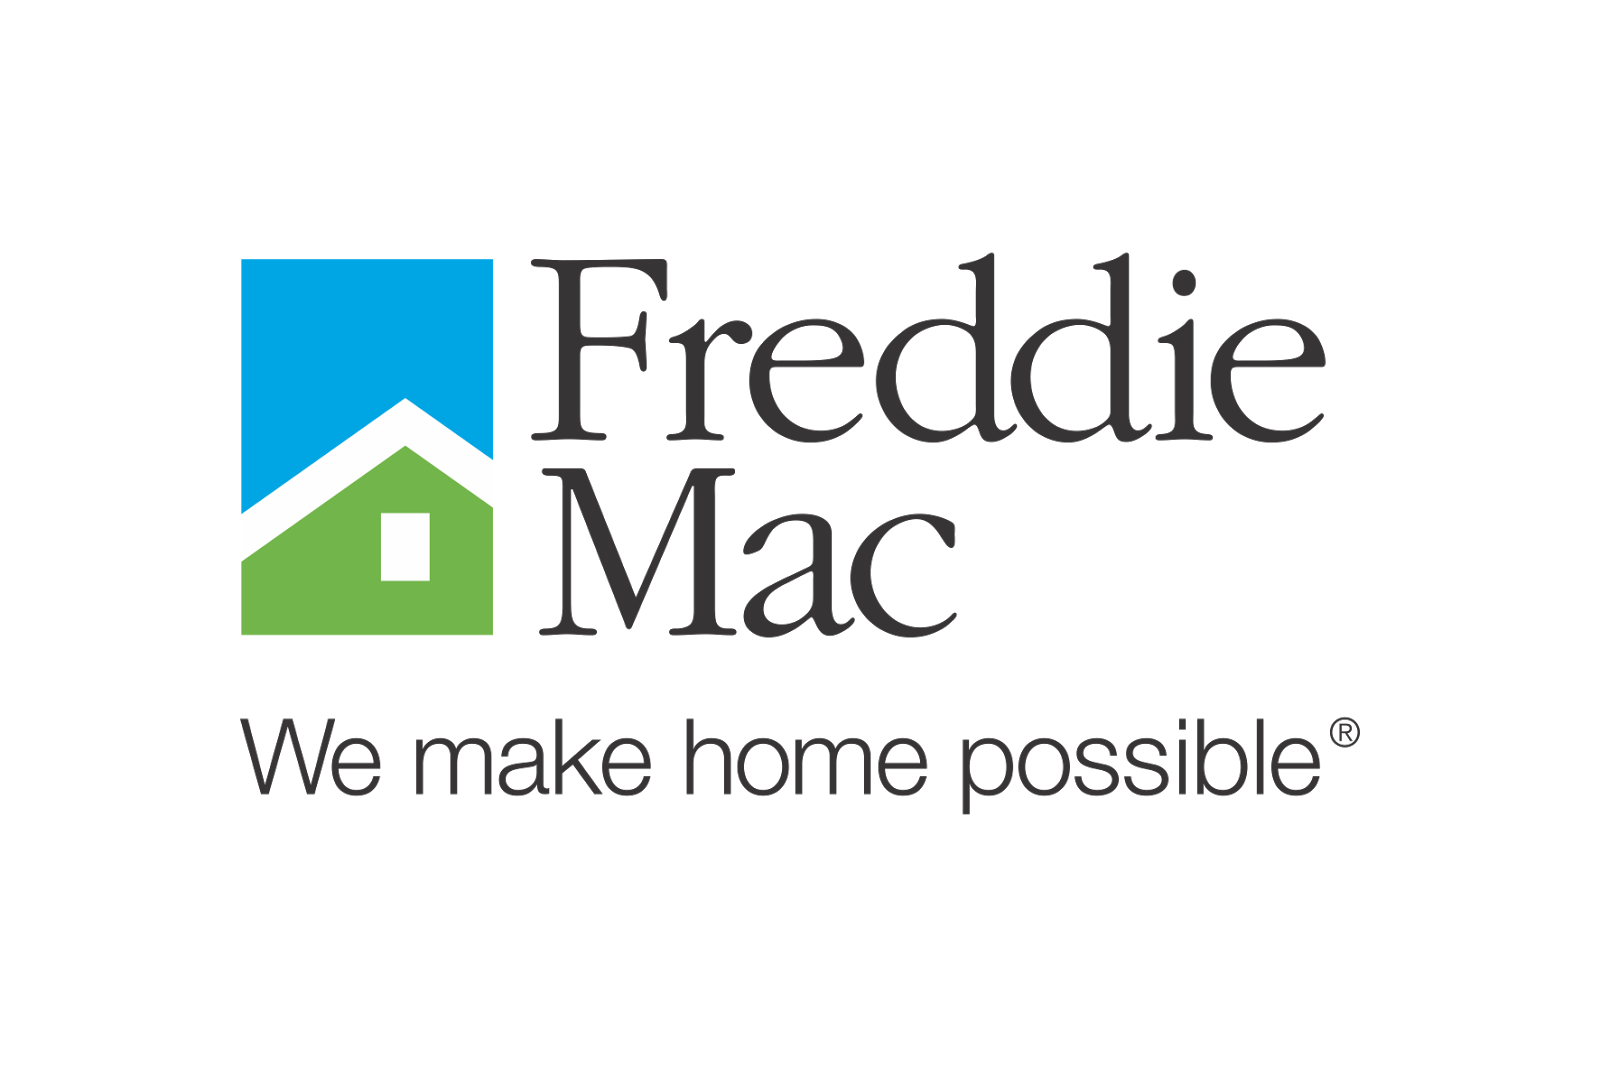 Freddie-Mac-Logo